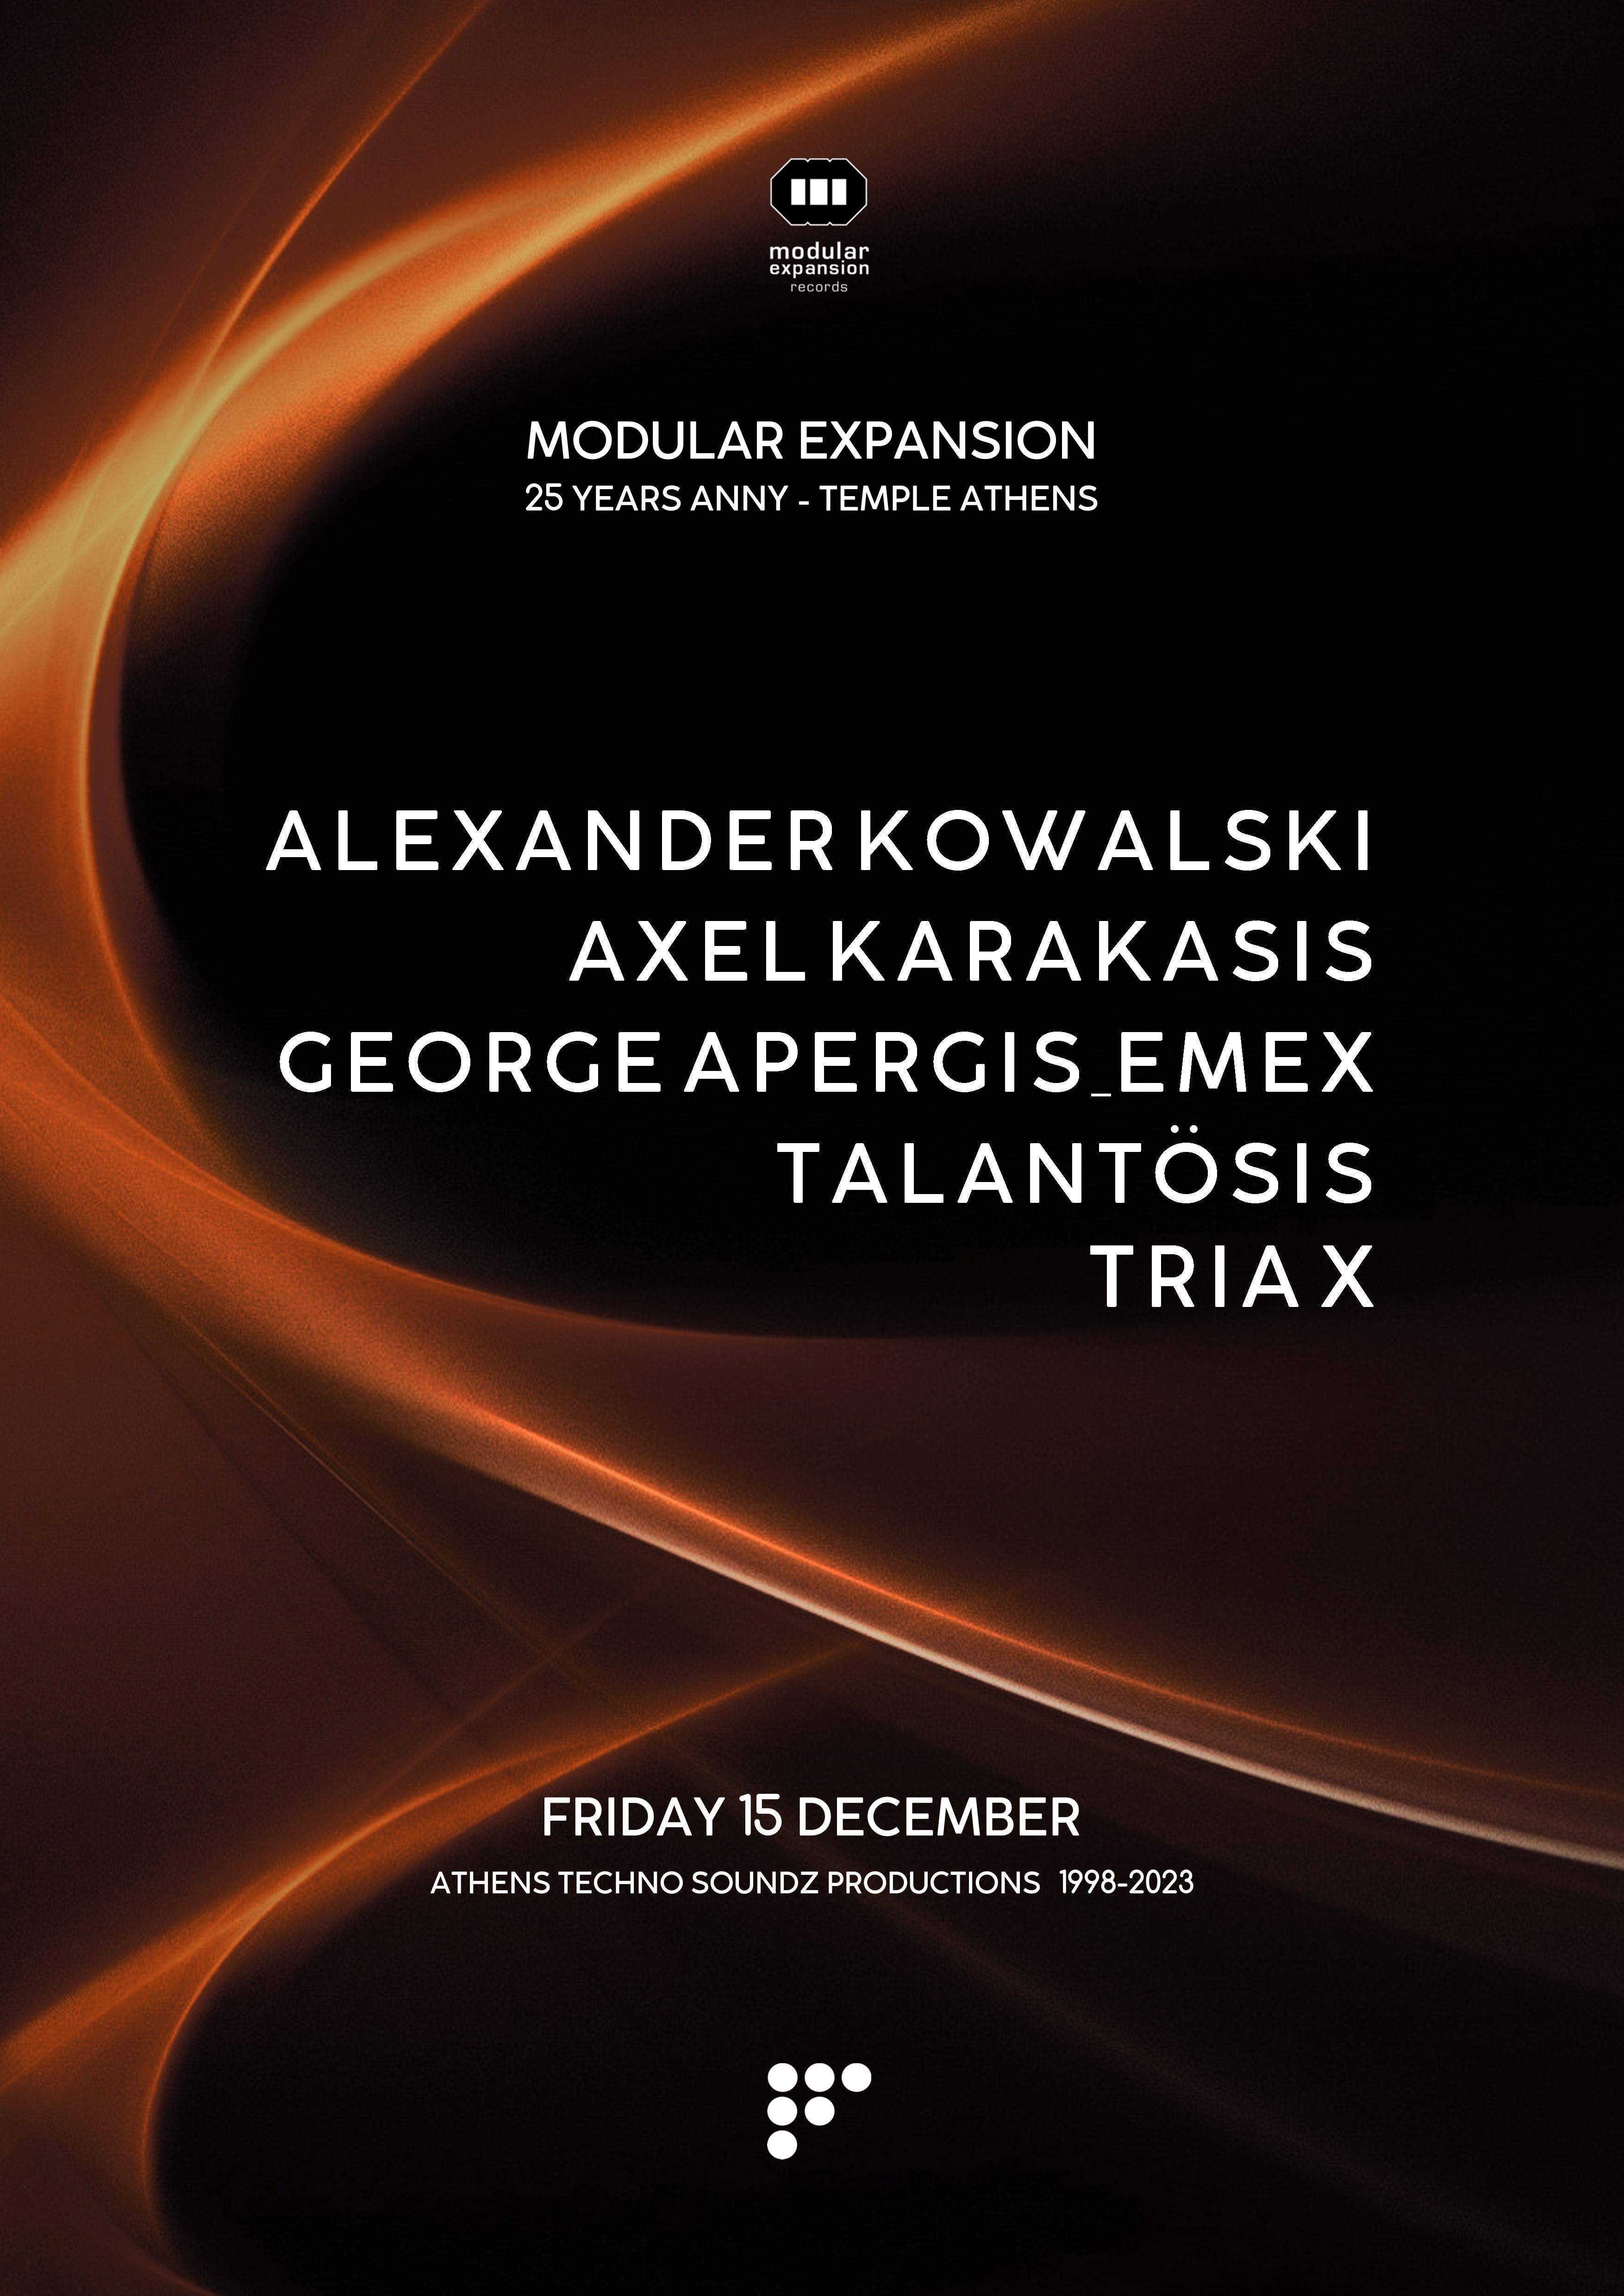 Modular Expansion 25 Years with Alexander Kowalski, Axel Karakasis, George Apergis - Página trasera